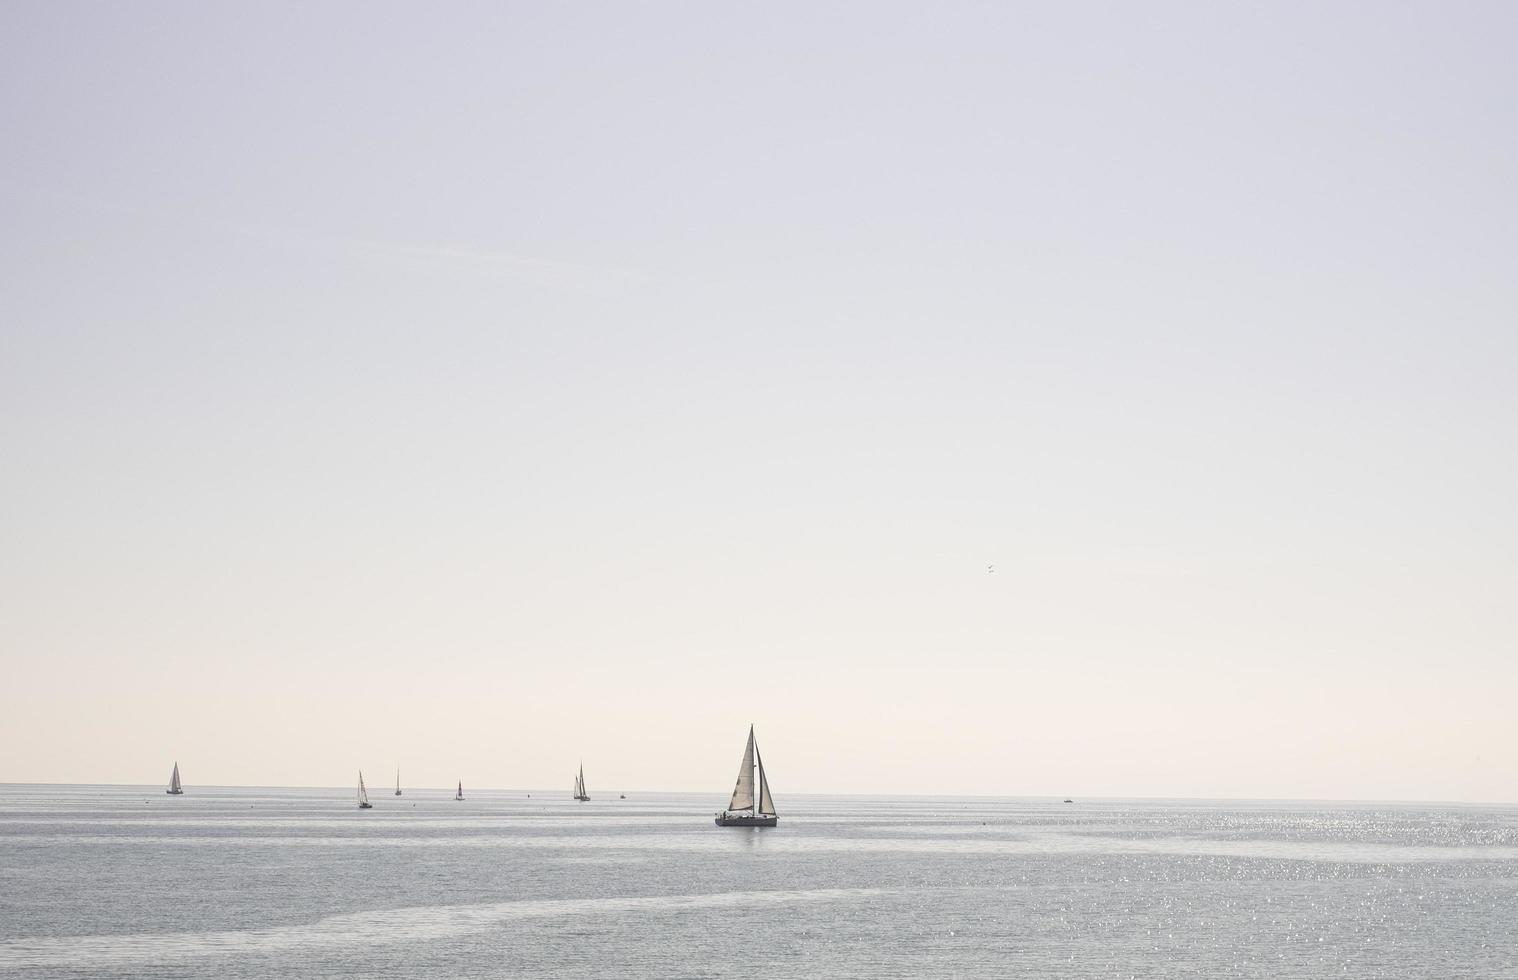 barca a vela che naviga nel mare in una giornata limpida foto